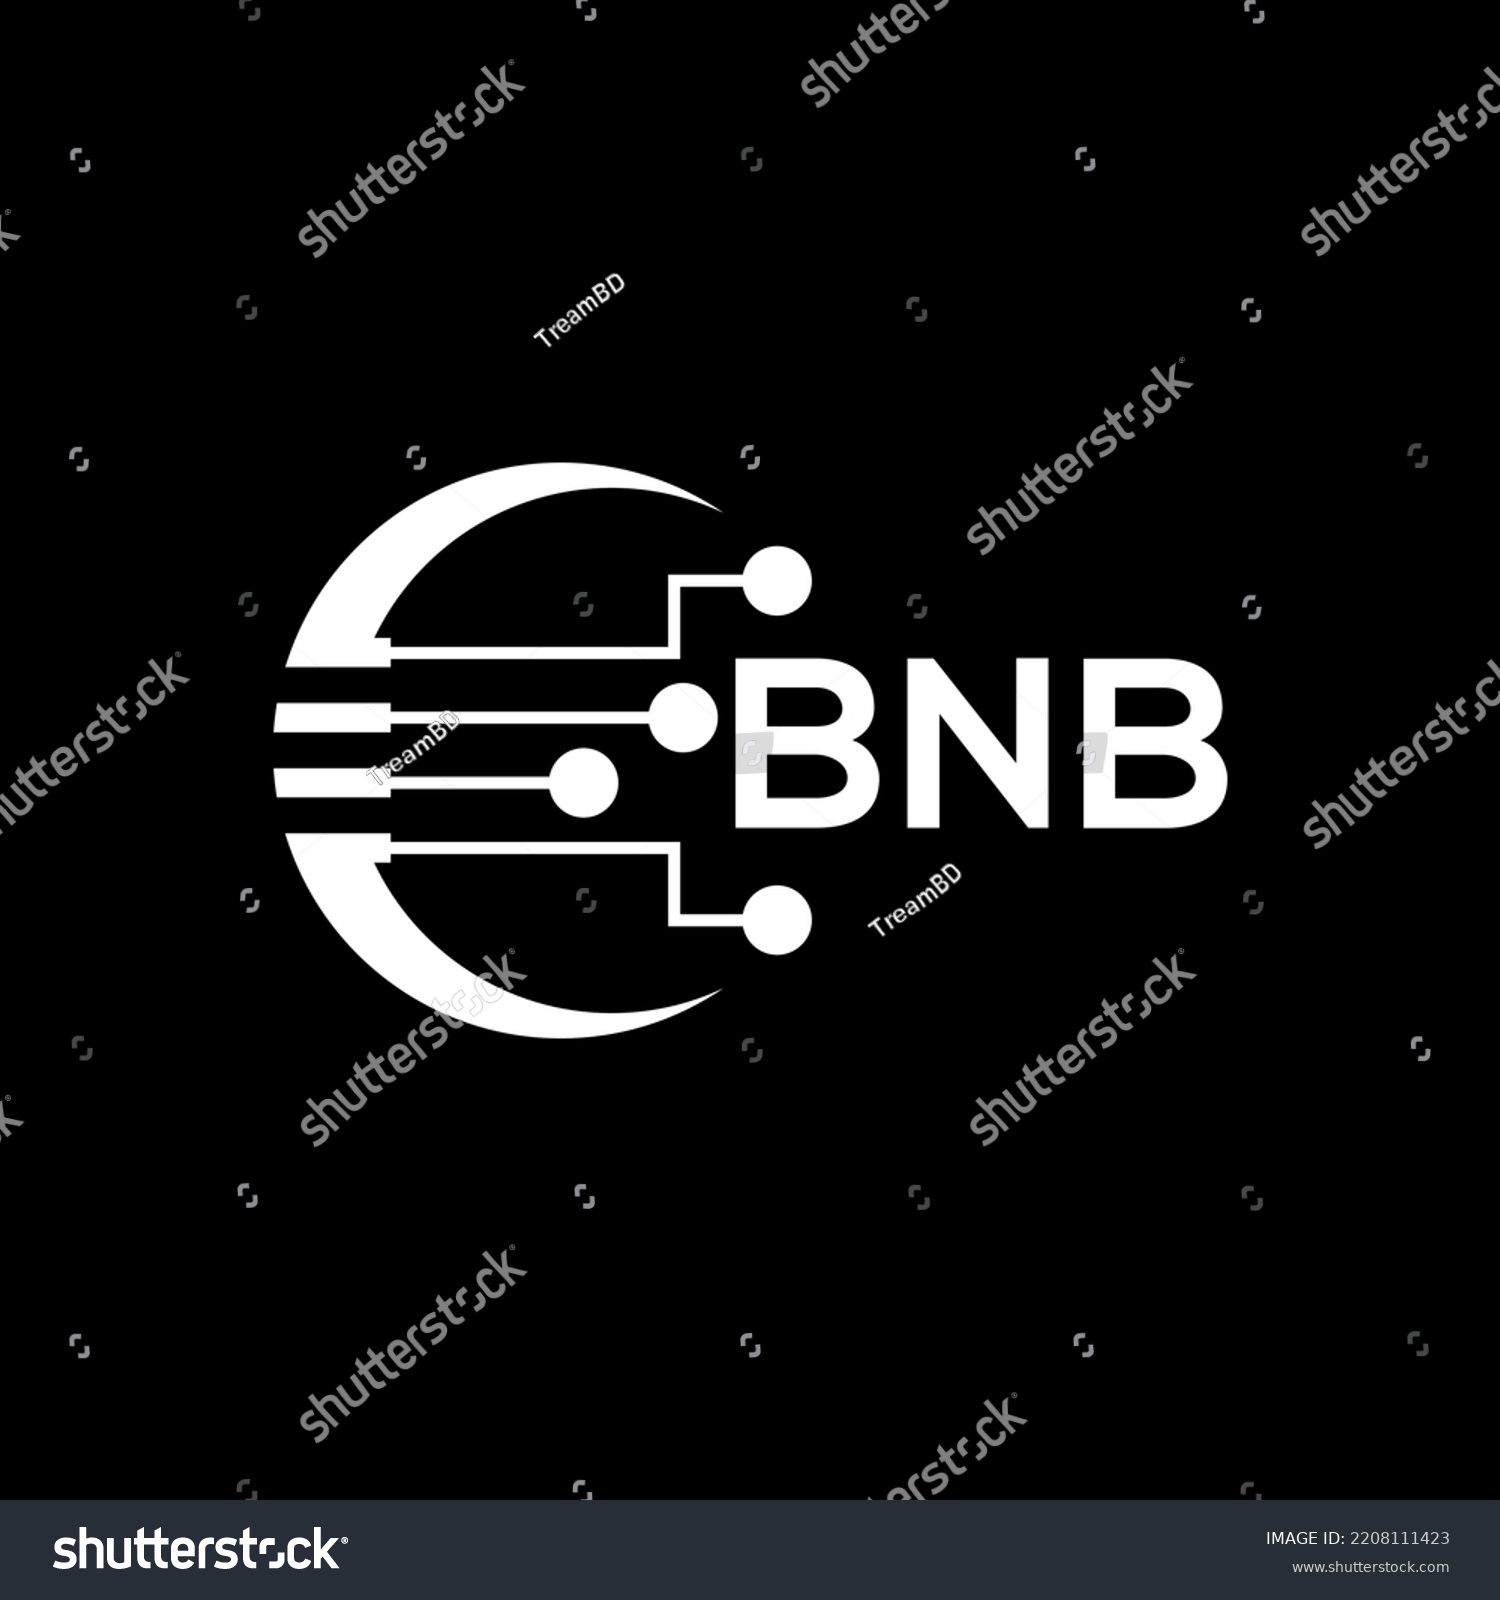 SVG of BNB Letter logo black background .BNB technology logo design vector image in illustrator .BNB letter logo design for entrepreneur and business.
 svg